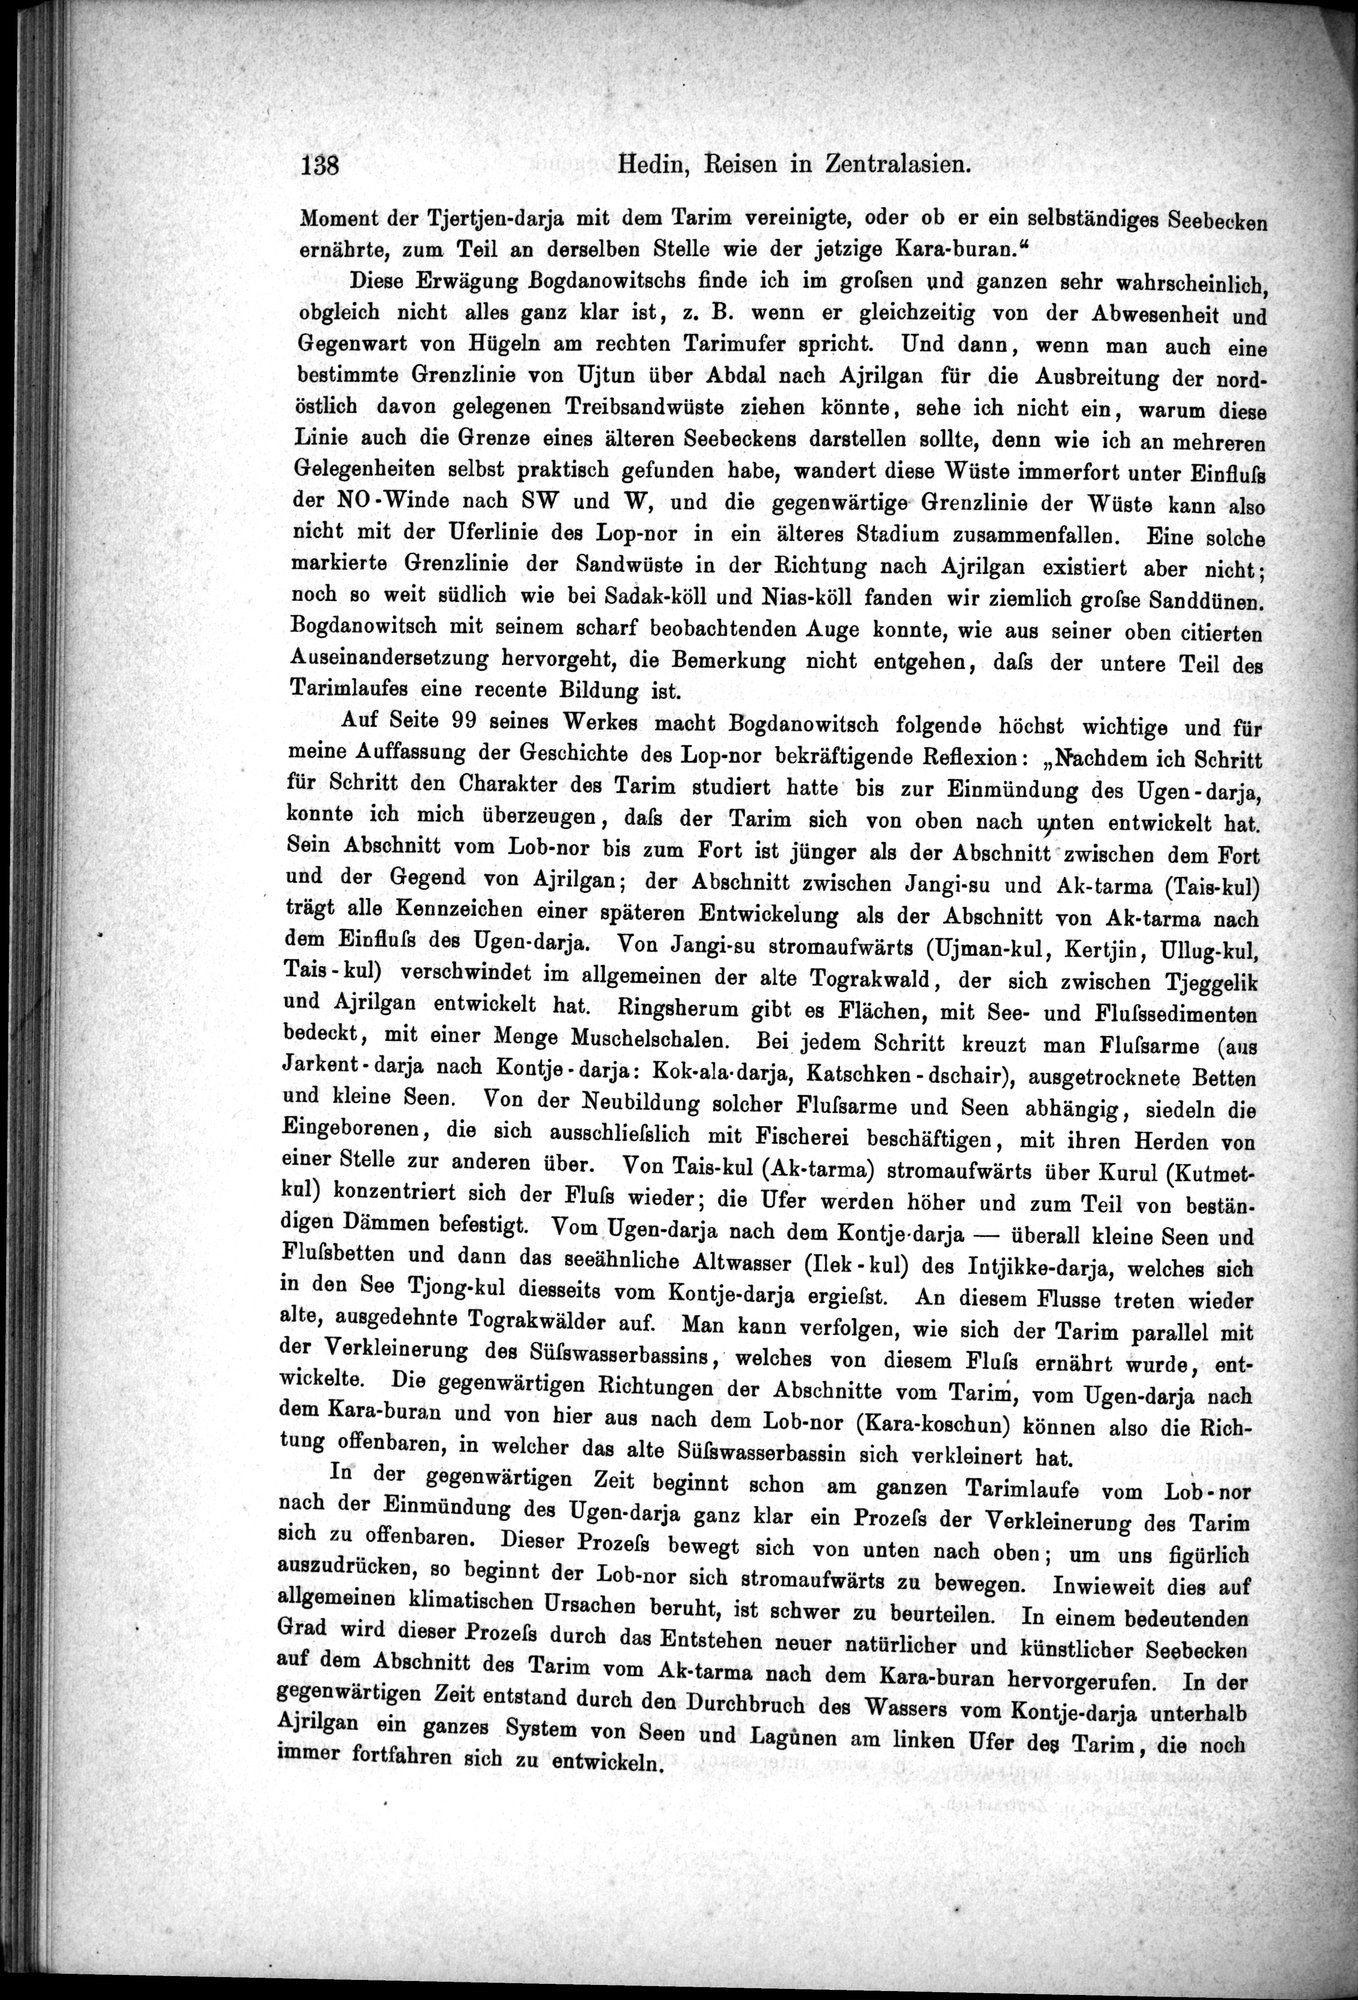 Die Geographische-Wissenschaftlichen Ergebnisse meiner Reisen in Zentralasien, 1894-1897 : vol.1 / Page 150 (Grayscale High Resolution Image)